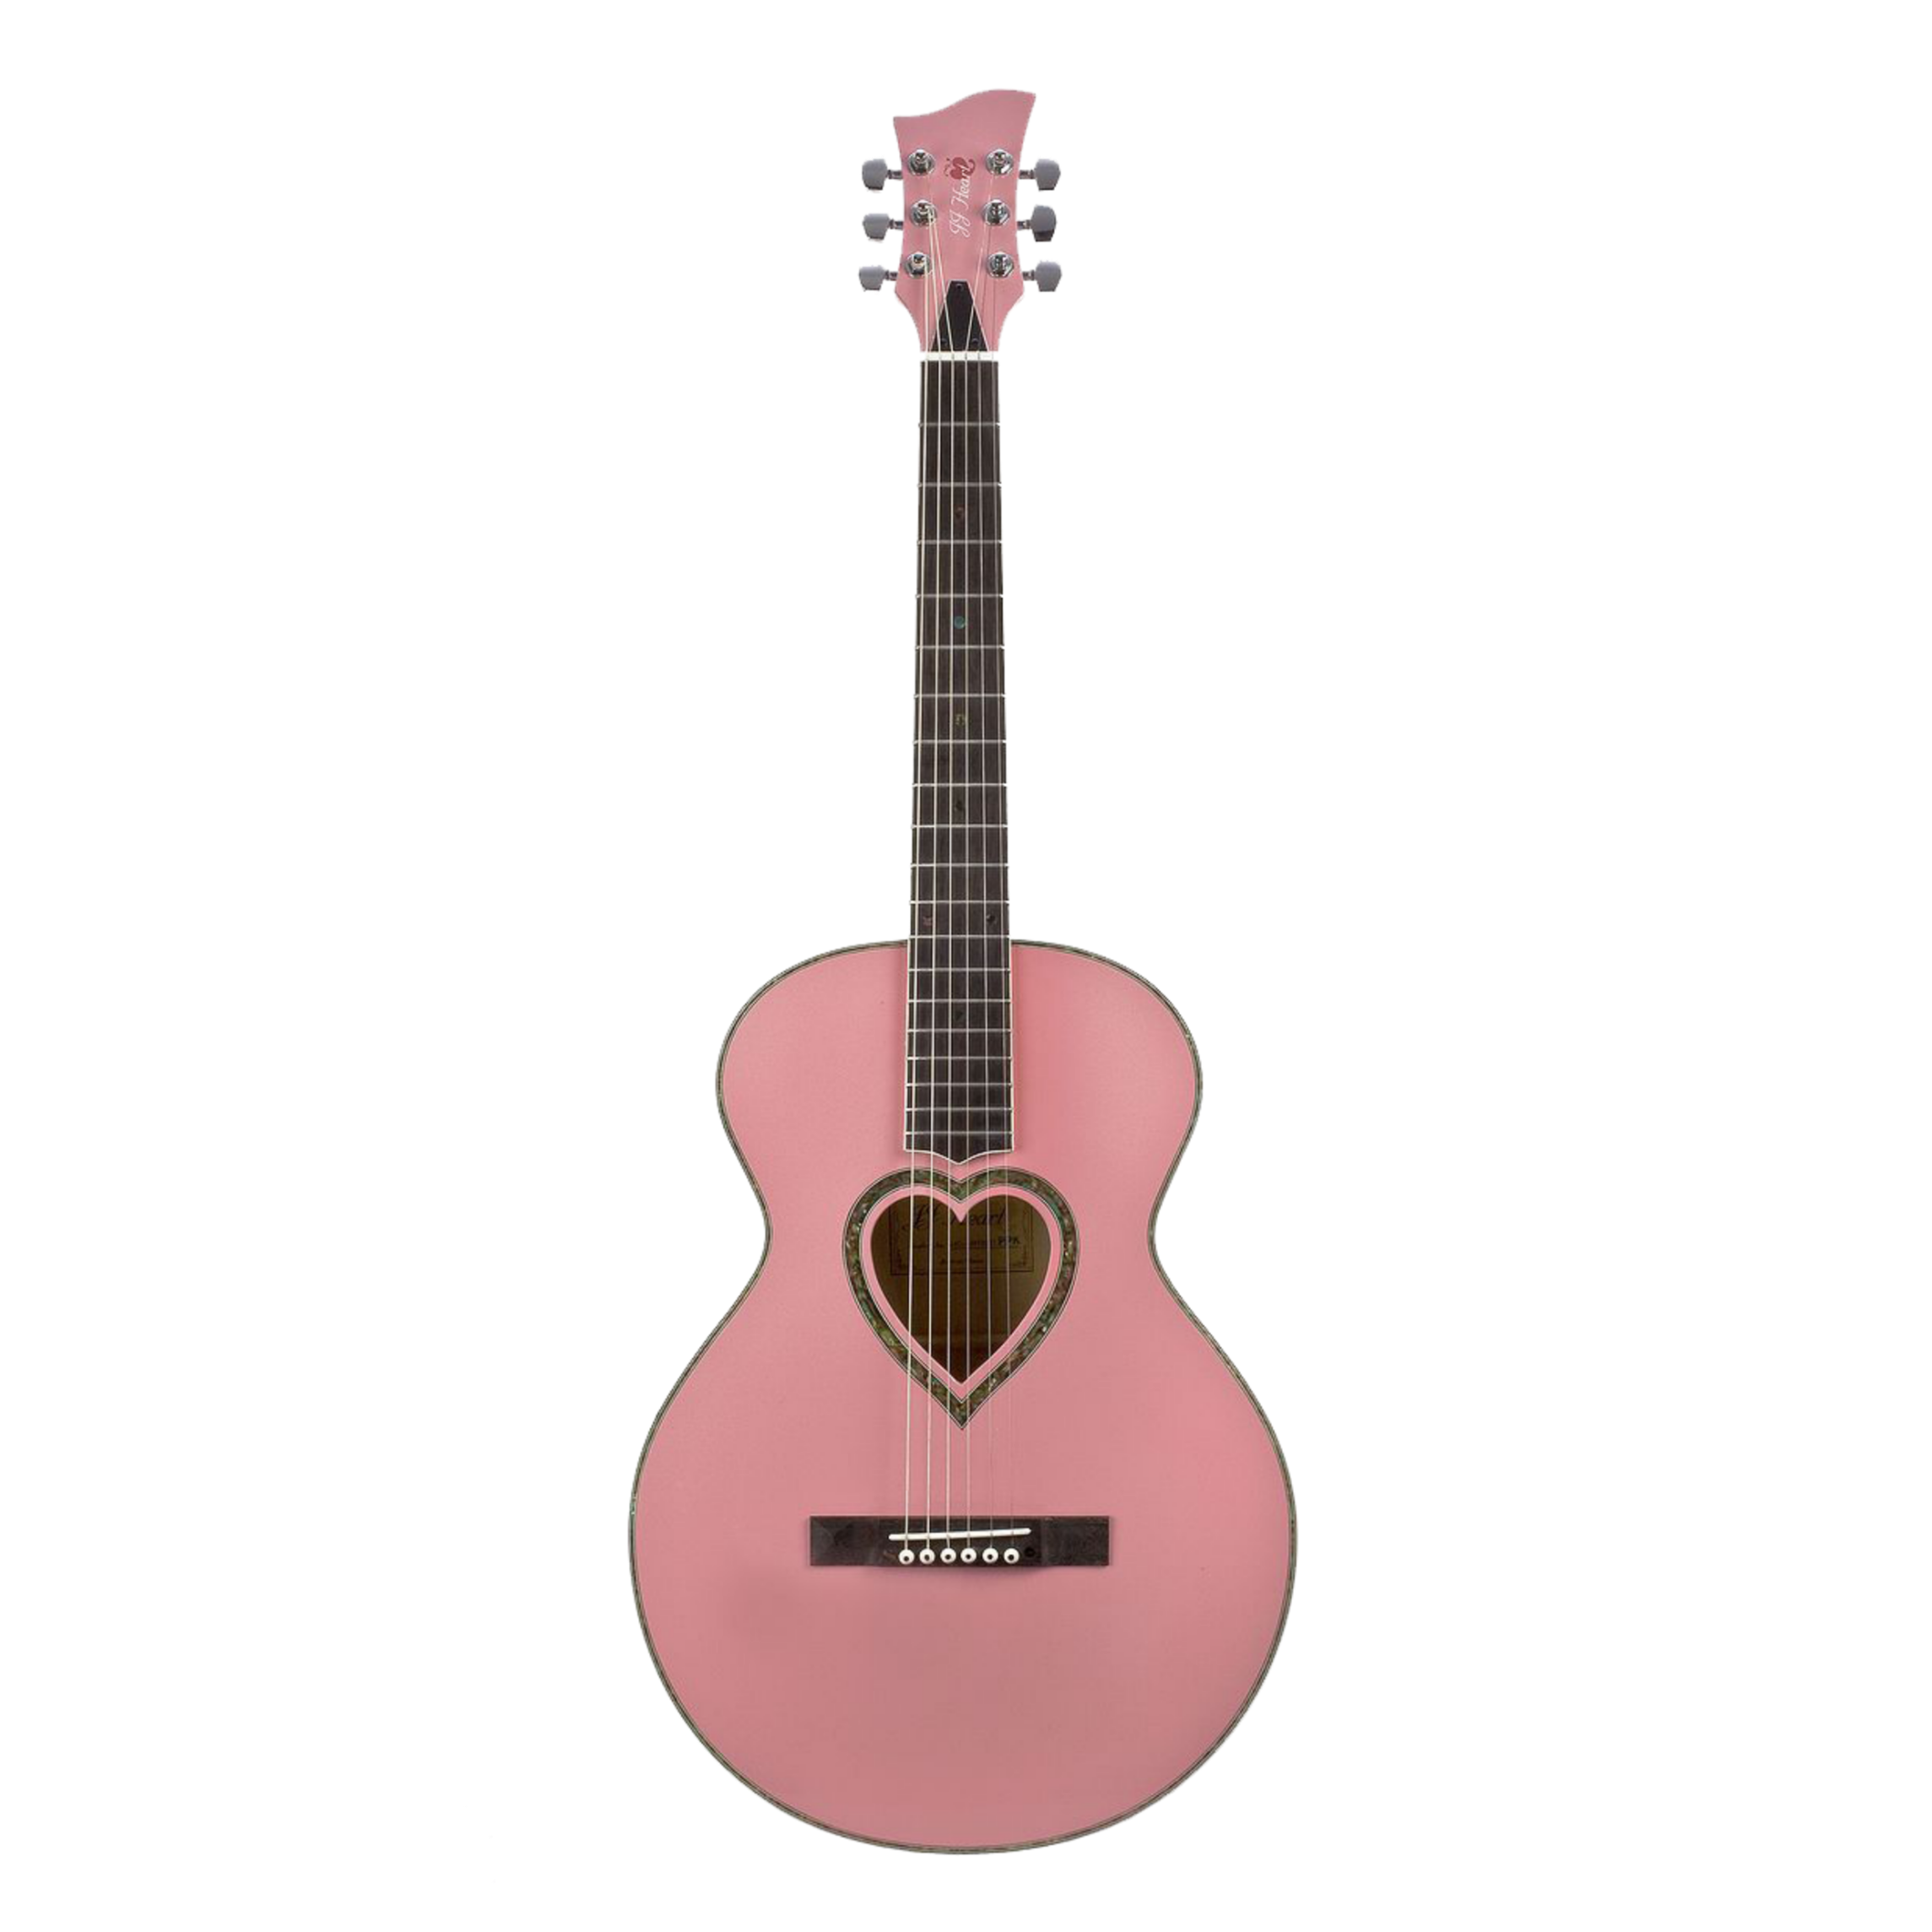 Акустическая гитара Fender розовая. Гитара Jaumbo 410. SN lx25476 гитара. Гитара для начинающих детская